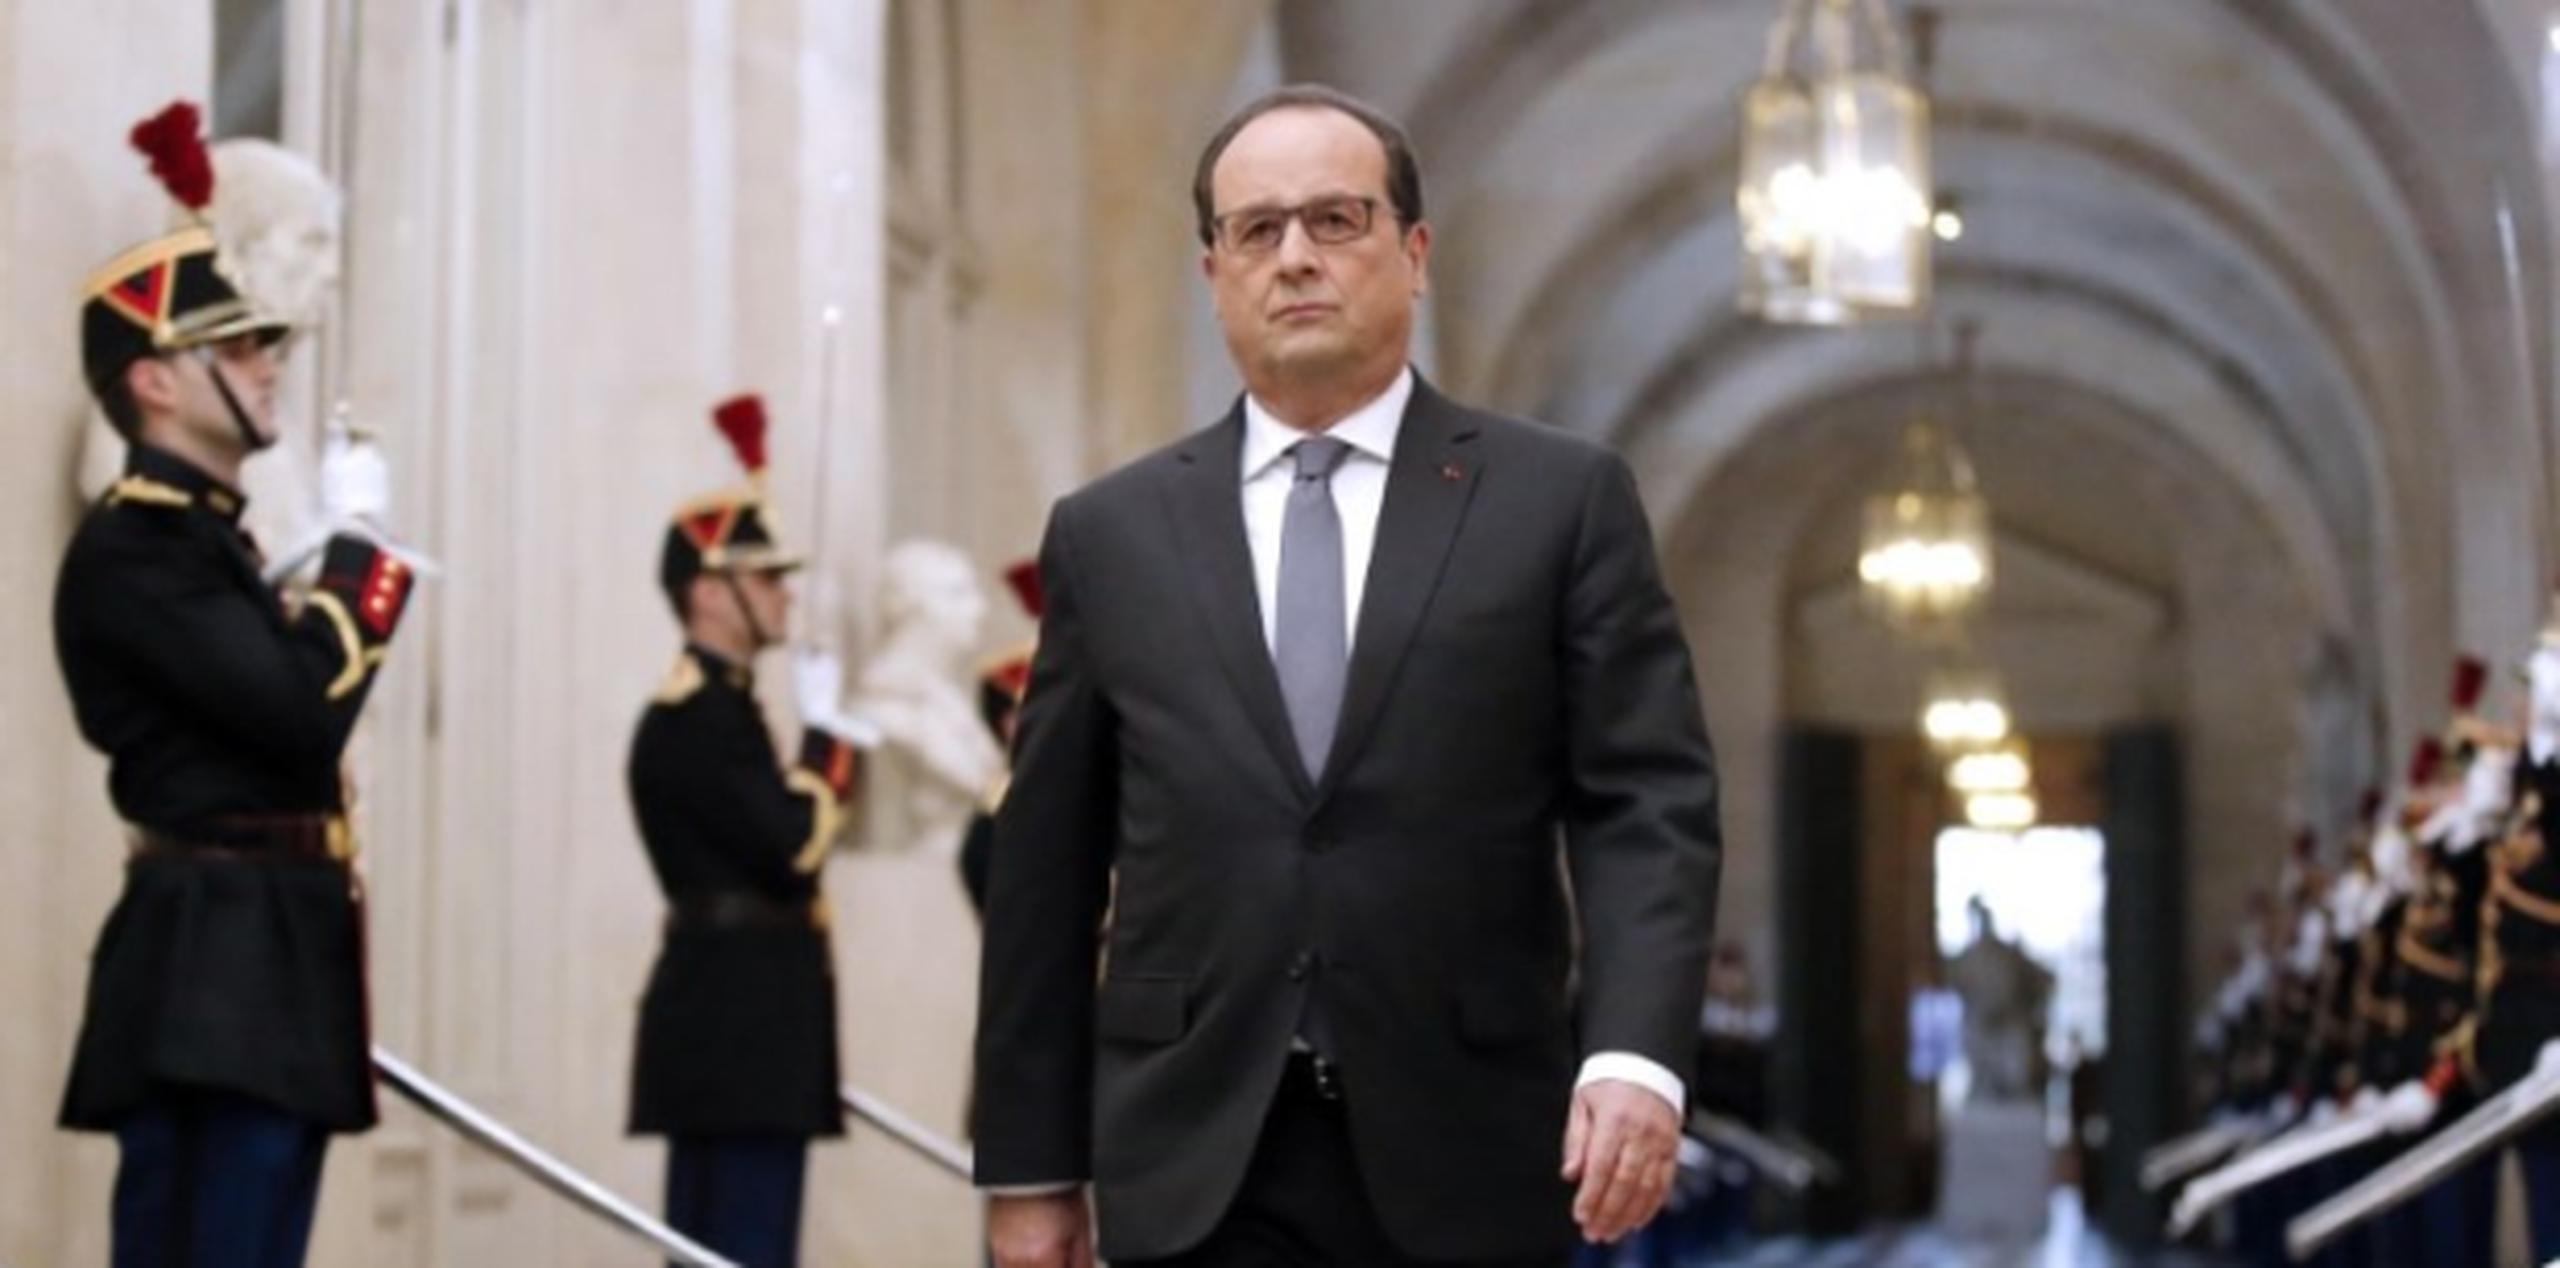 "Quienes han desafiado a Francia han acabado siendo los perdedores de la historia y volverá a ser así", aseguró Hollande, aquí a su llegada al Parlamento en Versalles. (AFP)